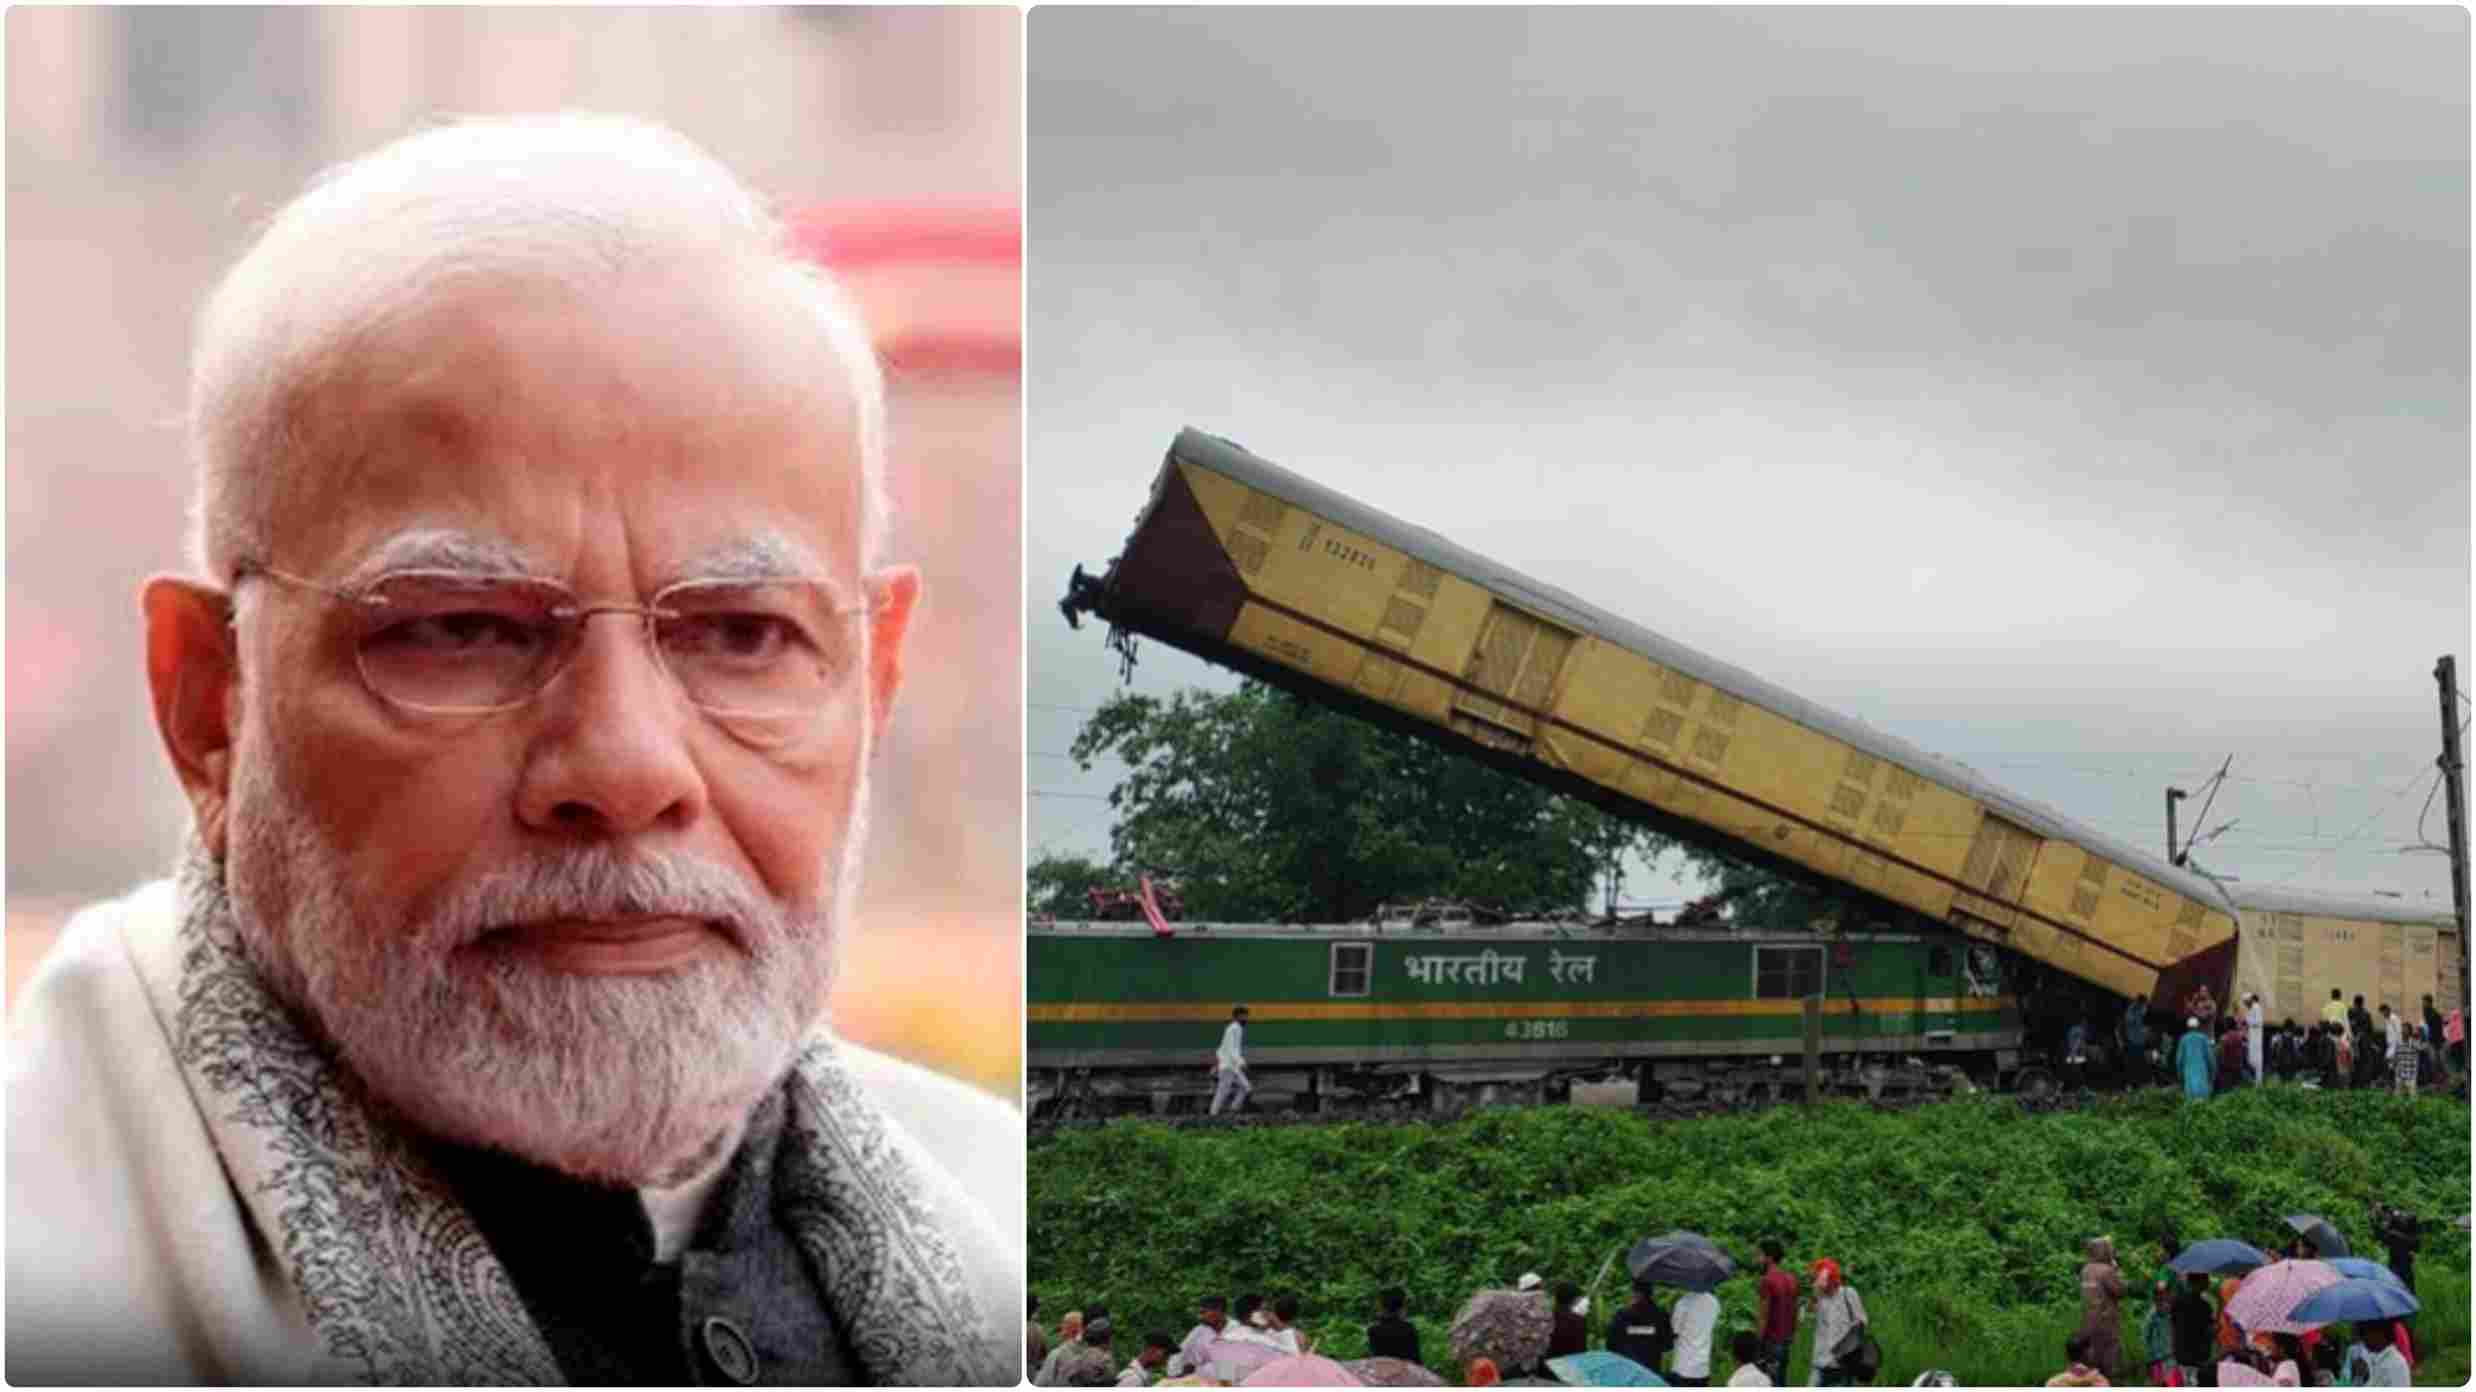 बंगाल के दार्जिलिंग में बड़ा ट्रेन हादसा, अबतक 8 लोगों की मौत; प्रधानमंत्री मोदी ने की अनुग्रह राशि की घोषणा